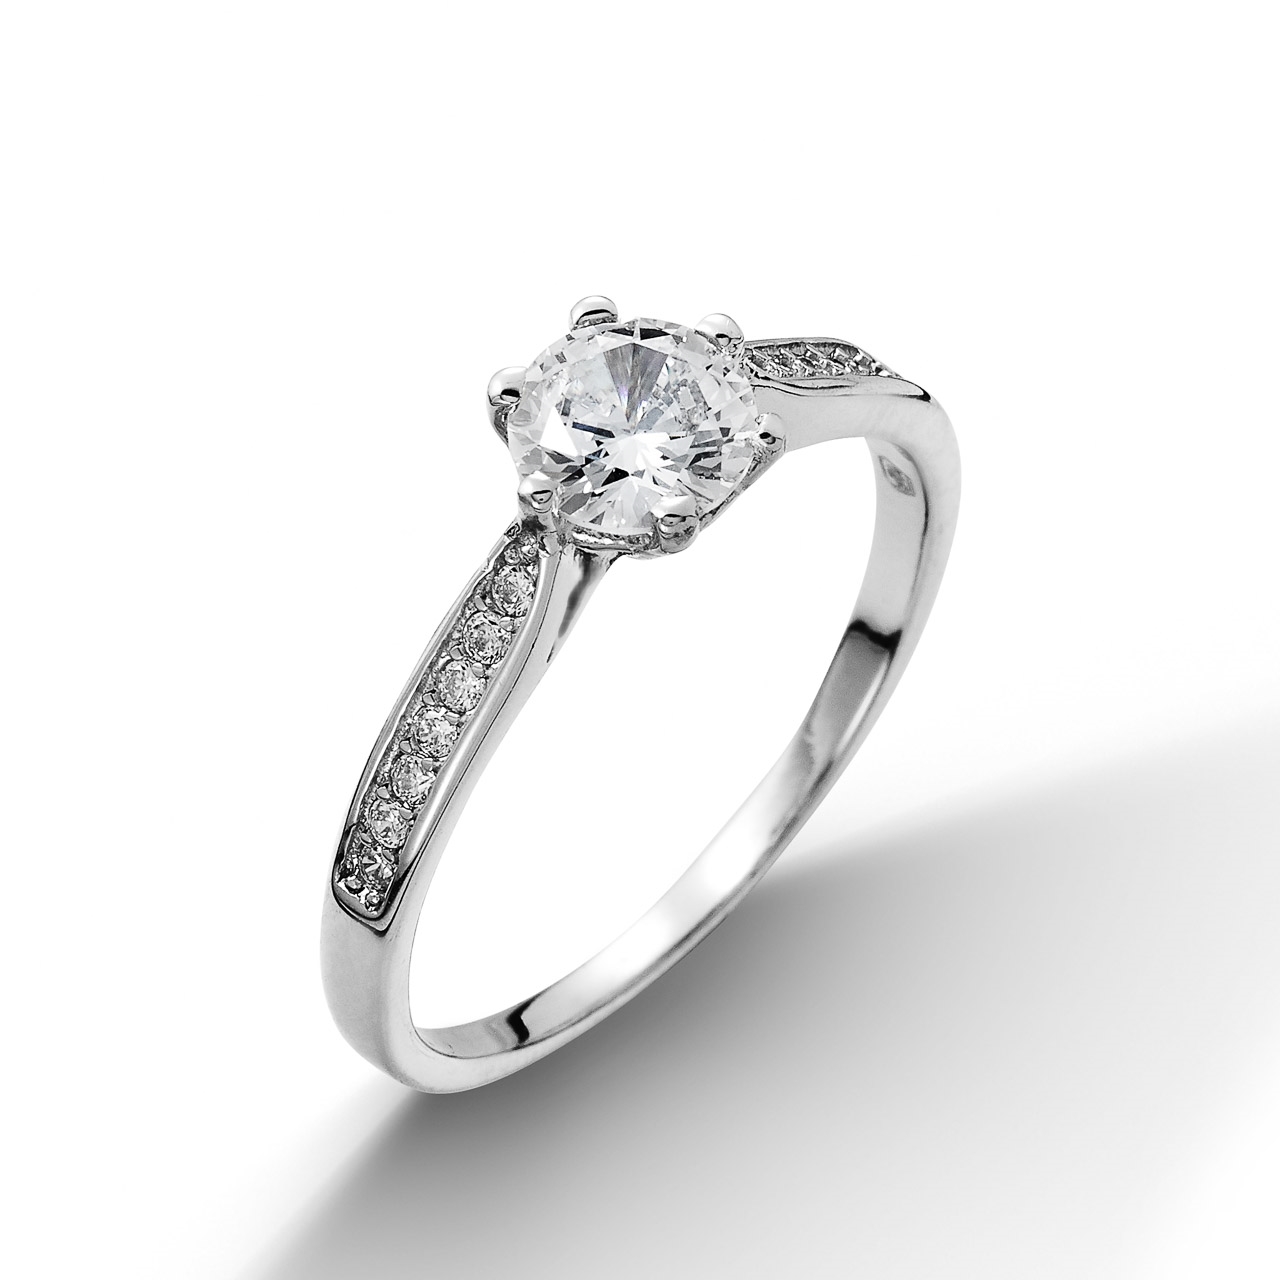 NUBIS® Stříbrný prsten se zirkony - velikost 61 - NB-5003-61